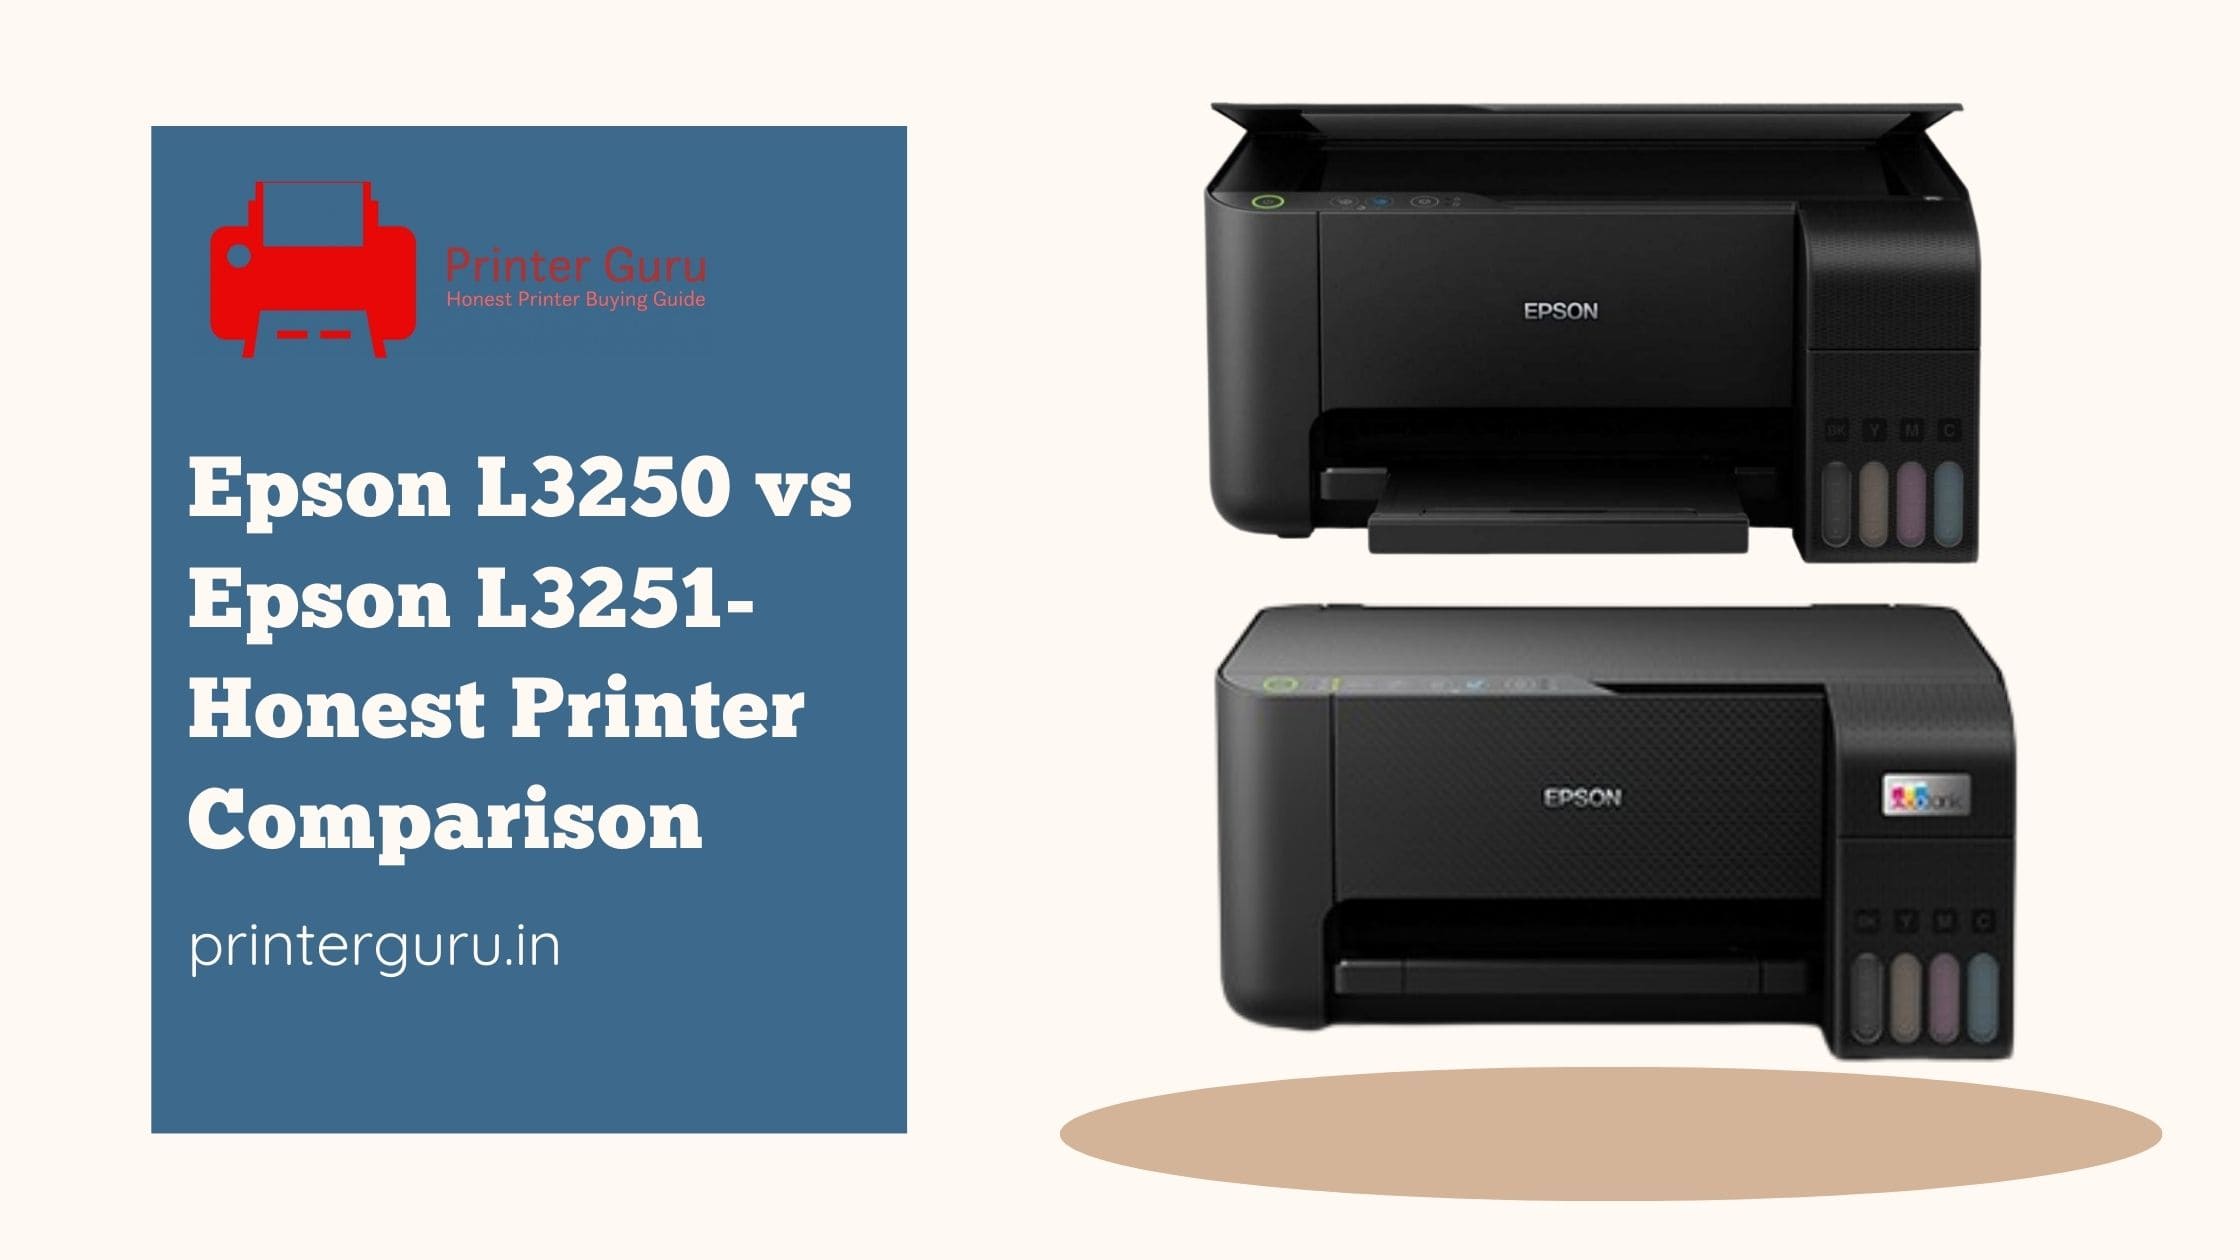 Epson L3250 vs Epson L3251